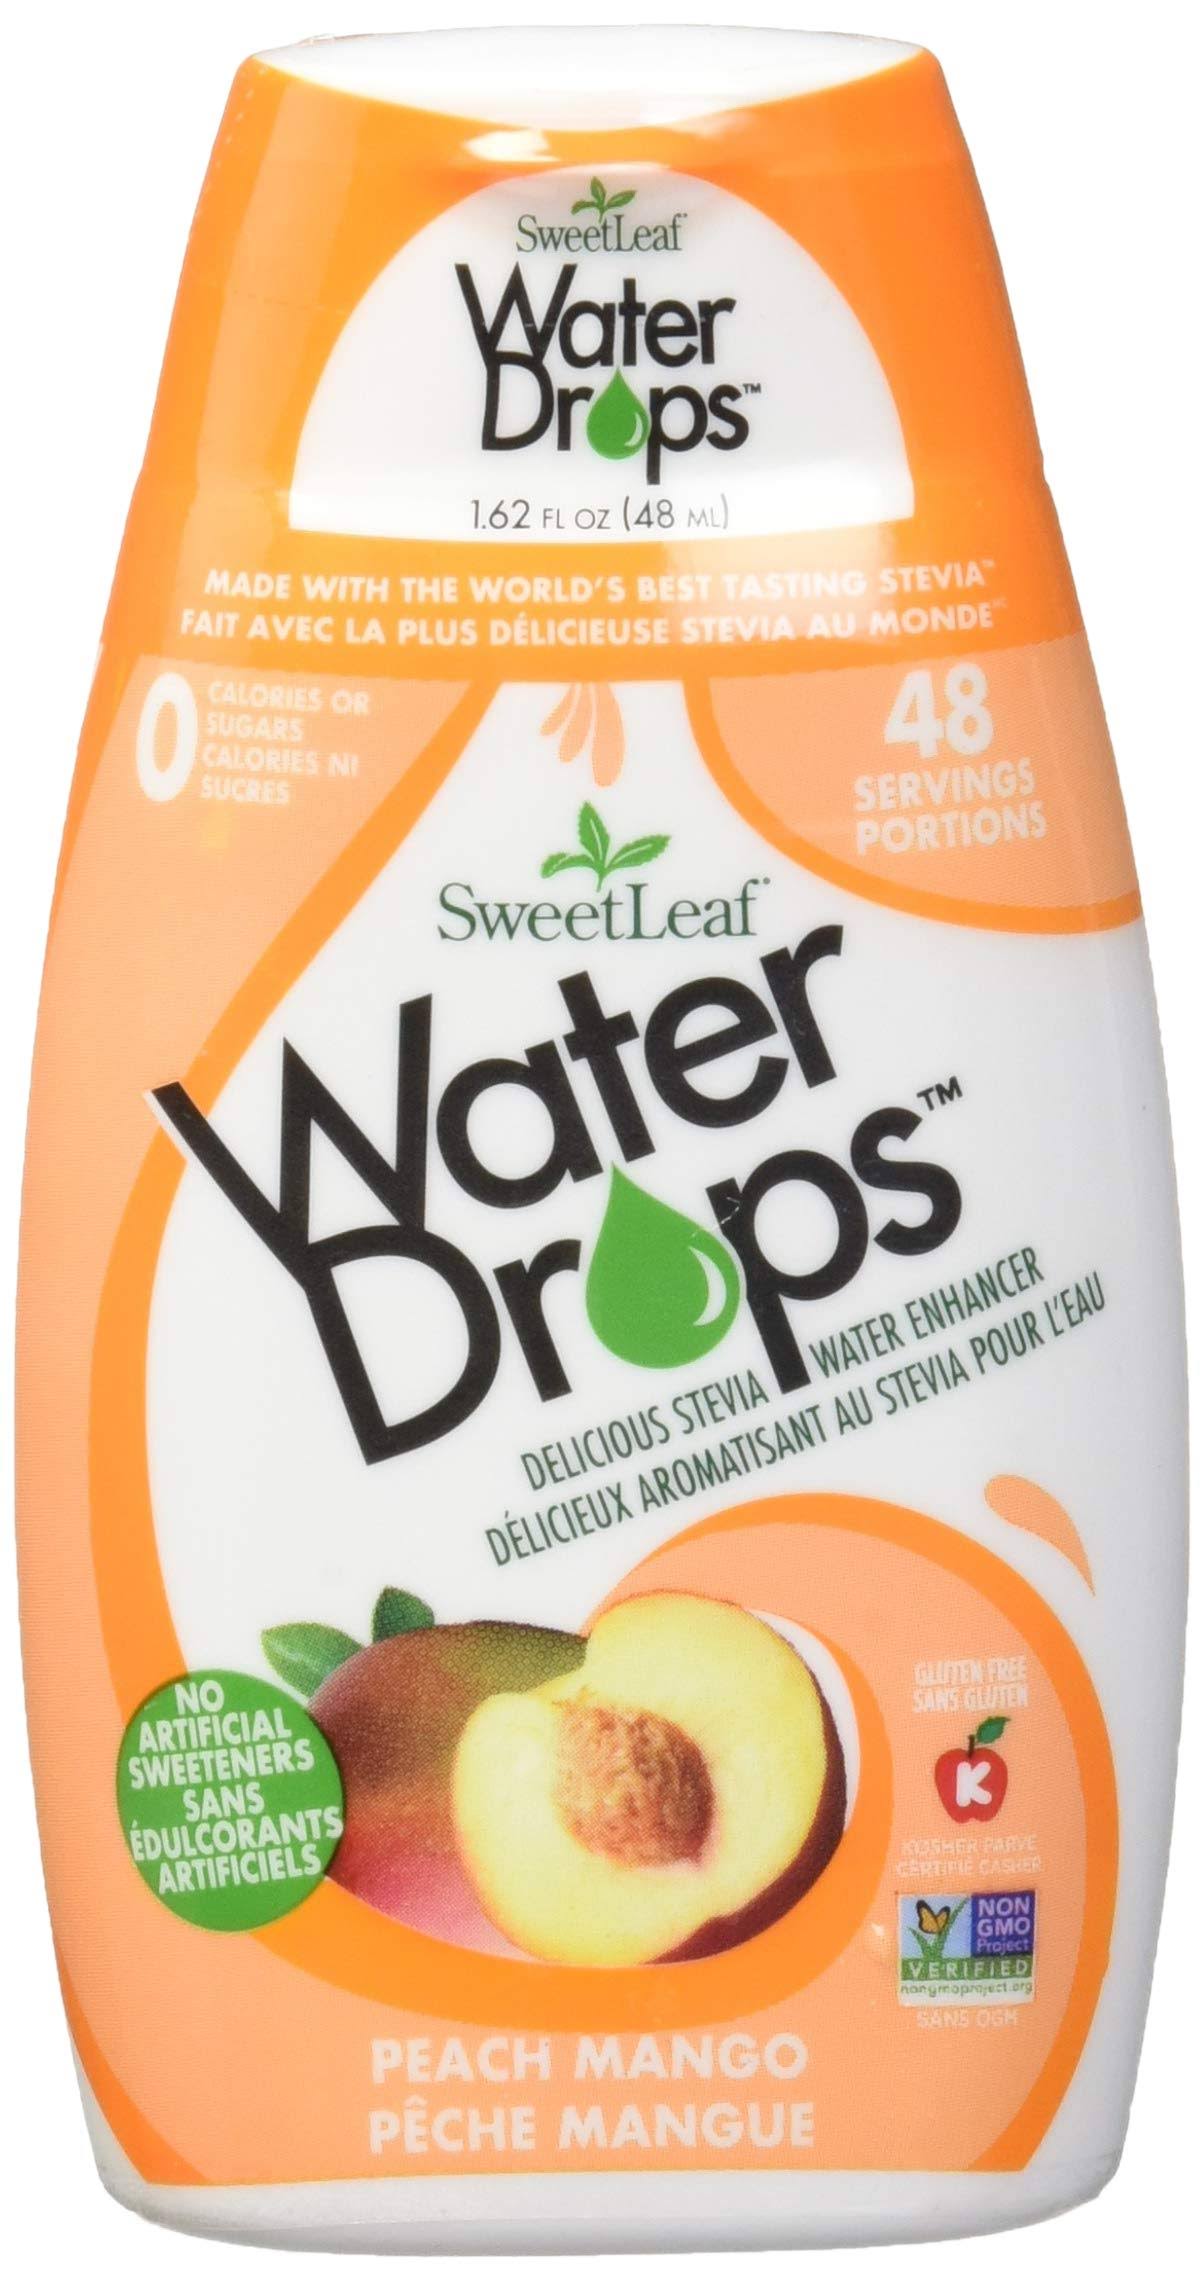 Sweet Leaf Water Drops - Peach Mango - 1.62 Fl Oz